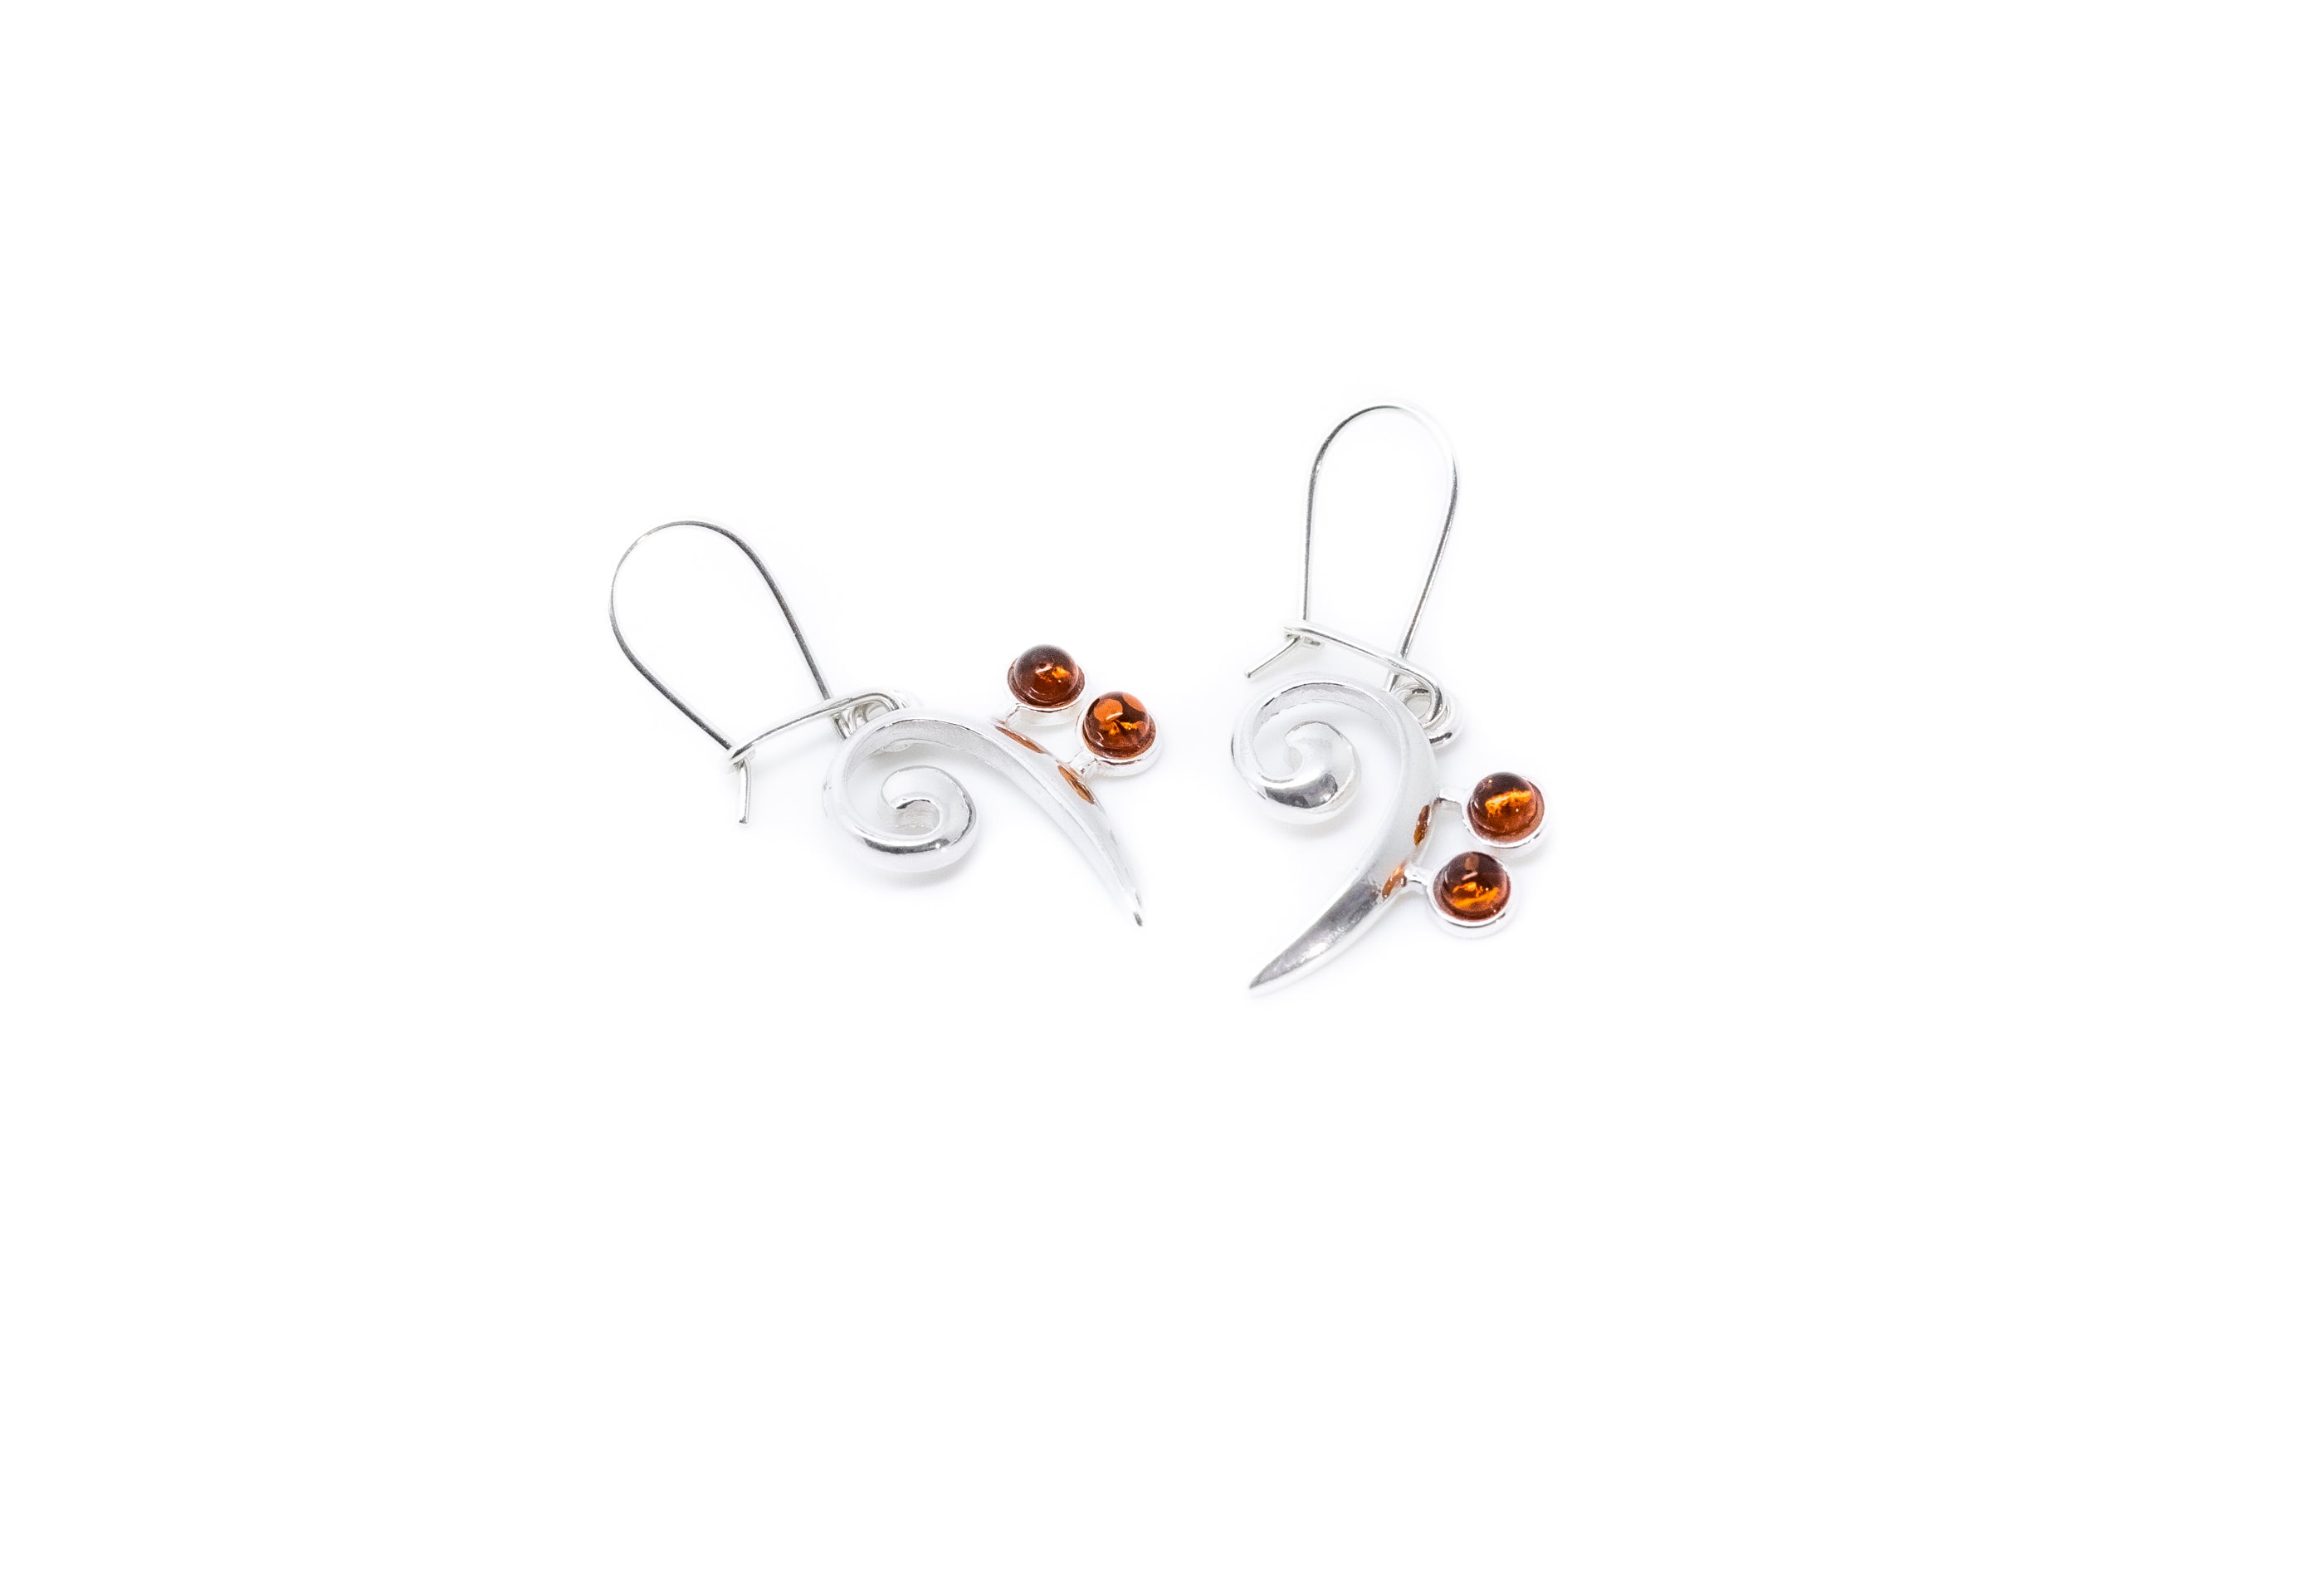 Bass Clef Gemstone Earrings- Earrings- Baltic Beauty